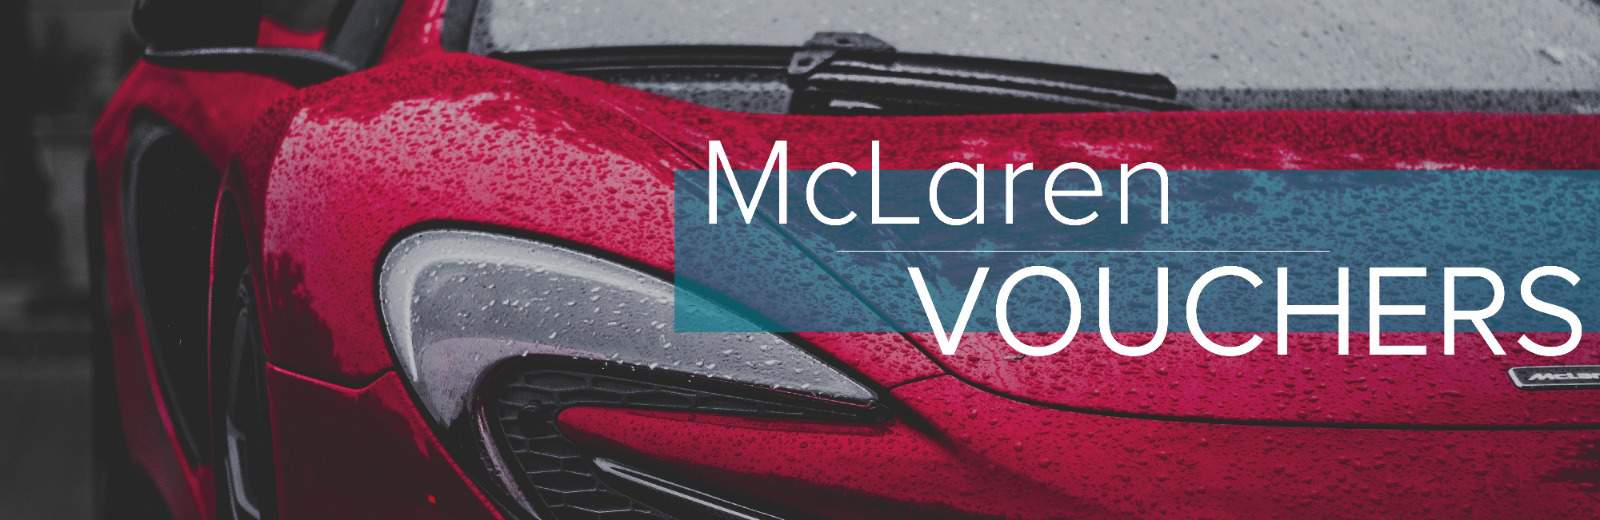 McLaren Vouchers